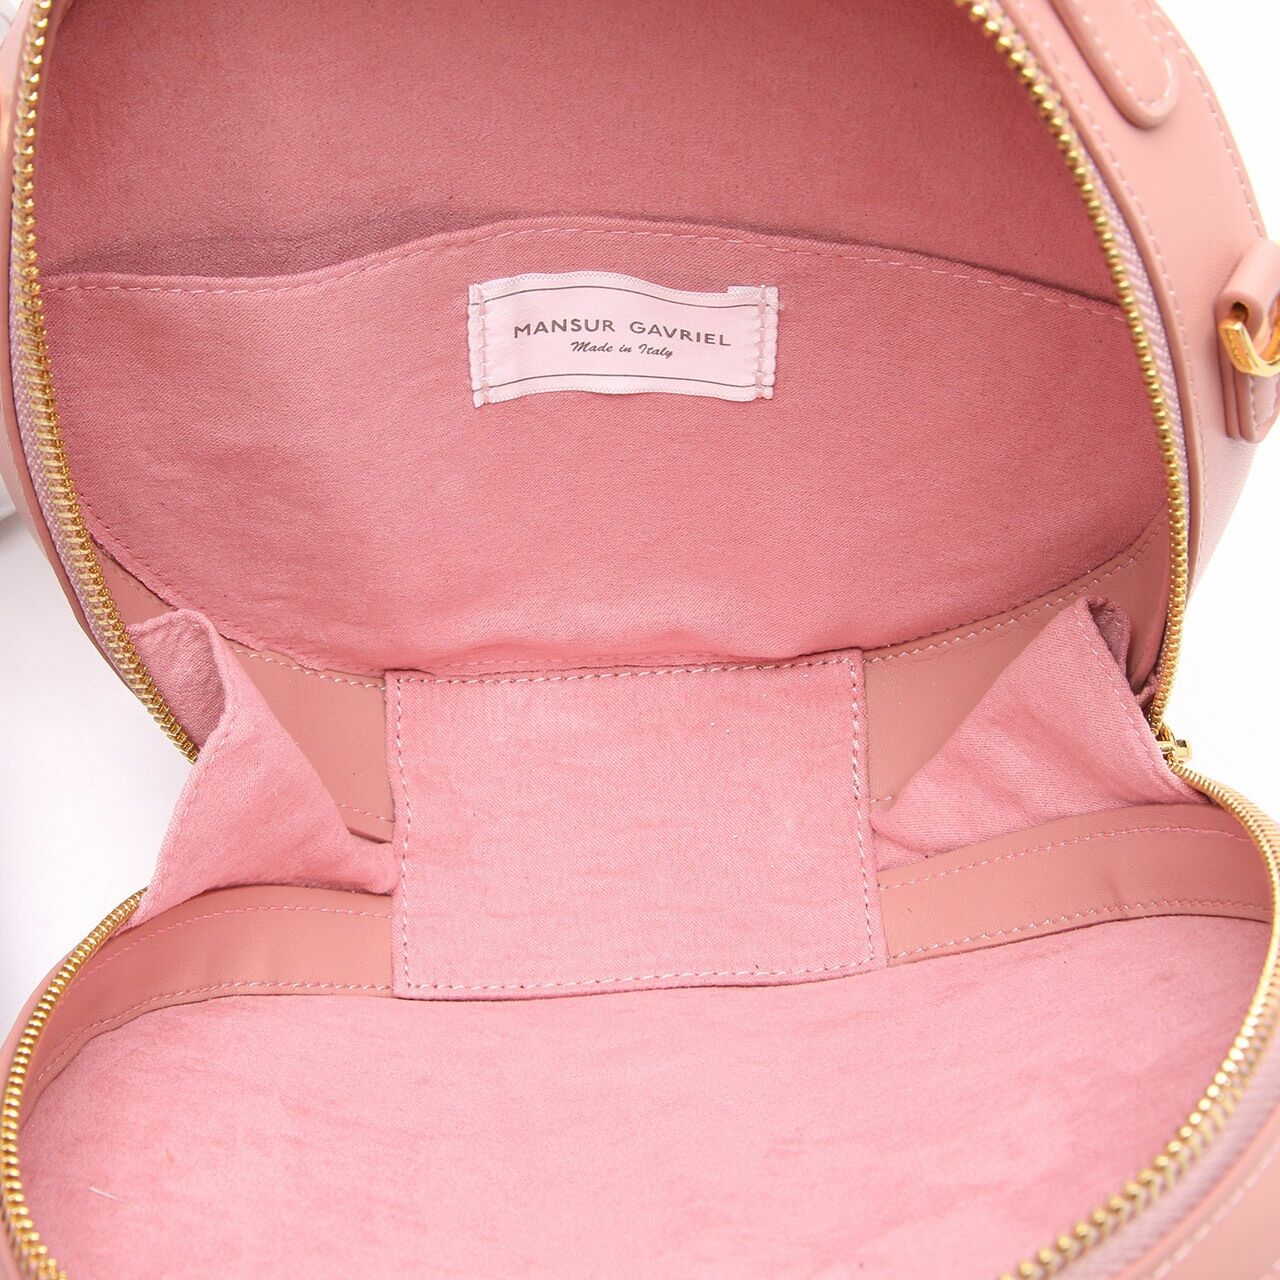 Mansur Gavriel Leather Circle Pink Satchel Bag